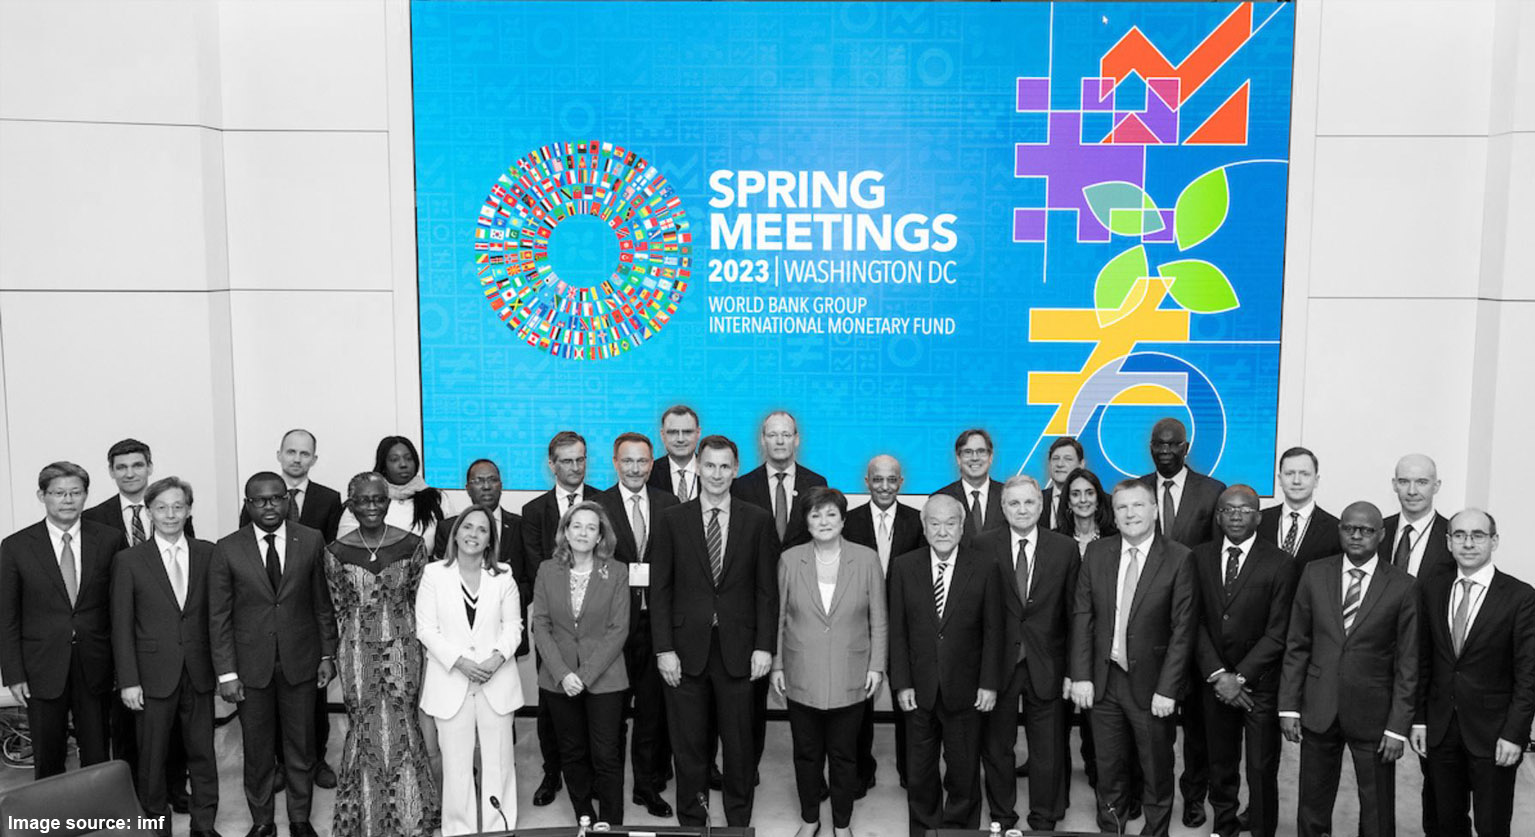 انعقاد اجتماعات الربيع لصندوق النقد الدولي ومجموعة البنك الدولي وسط نظام عالمي متغير